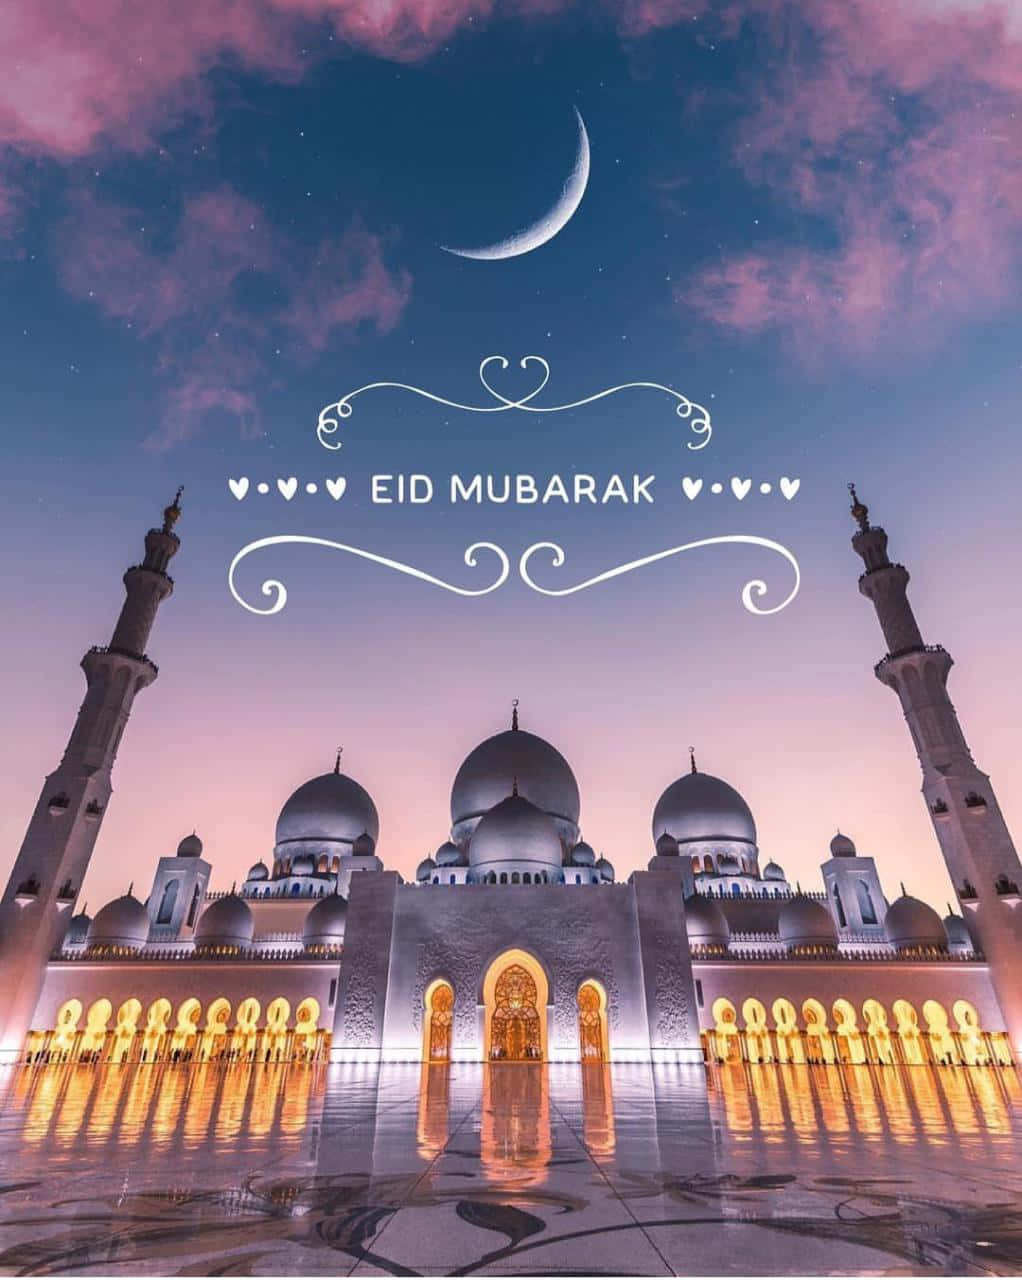 Wishing you a Joyful Eid!